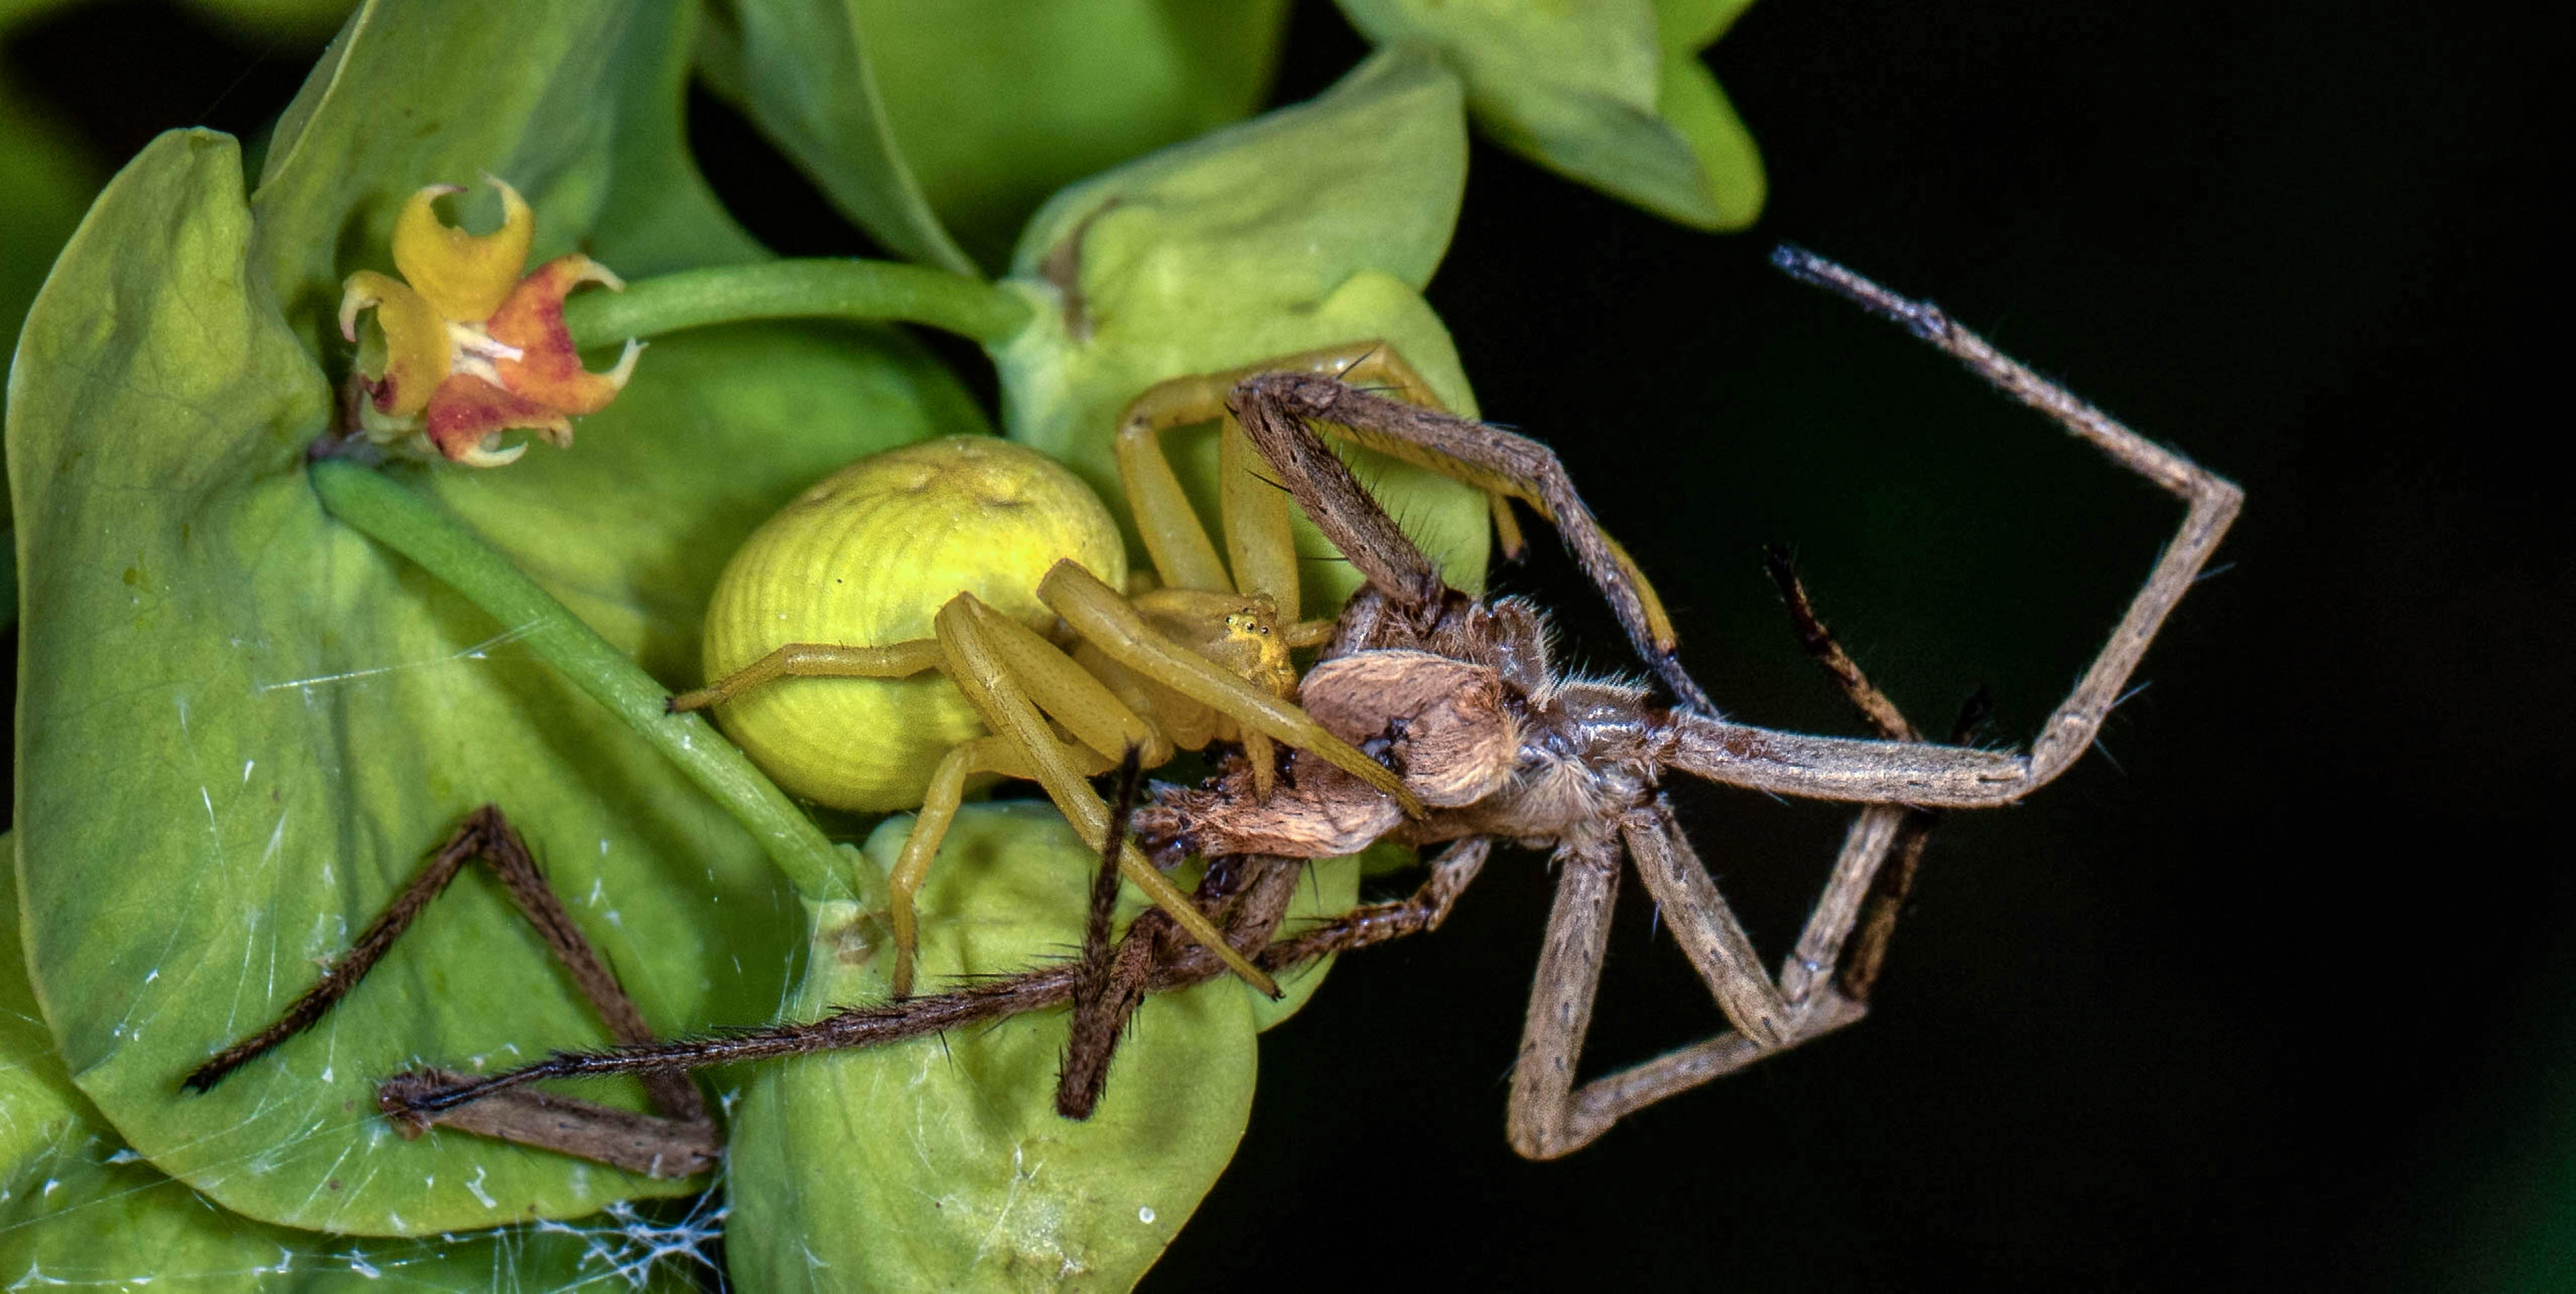 Crab Spider - Misumena vatia - with prey